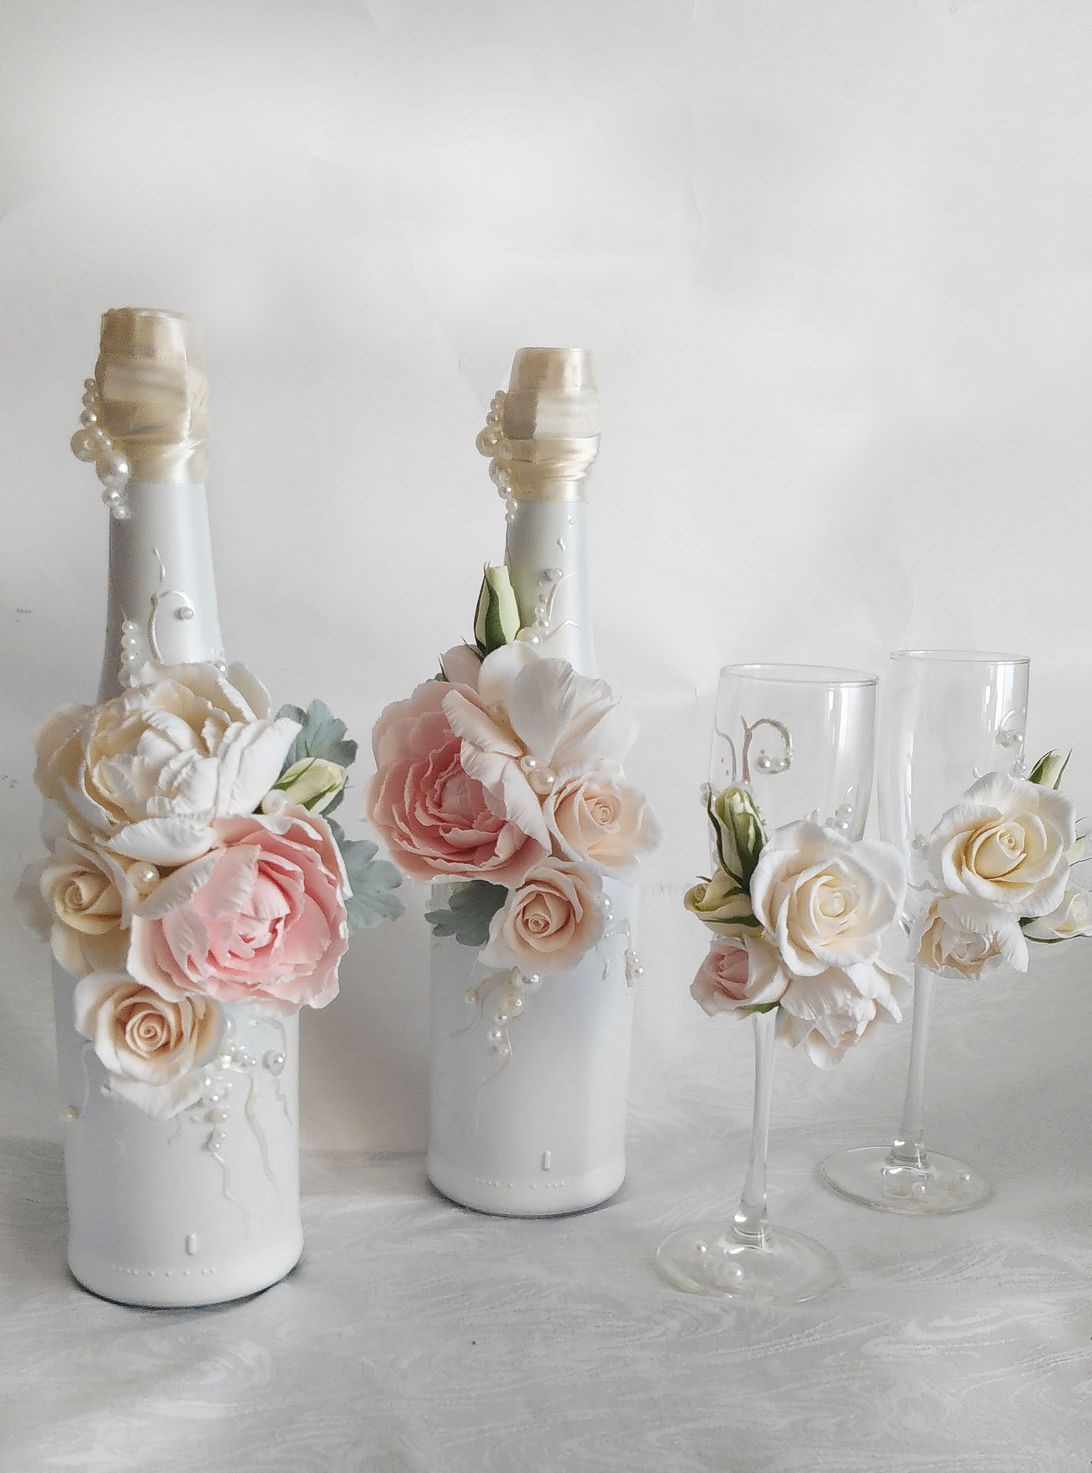 Бутылки и бокалы на свадьбу